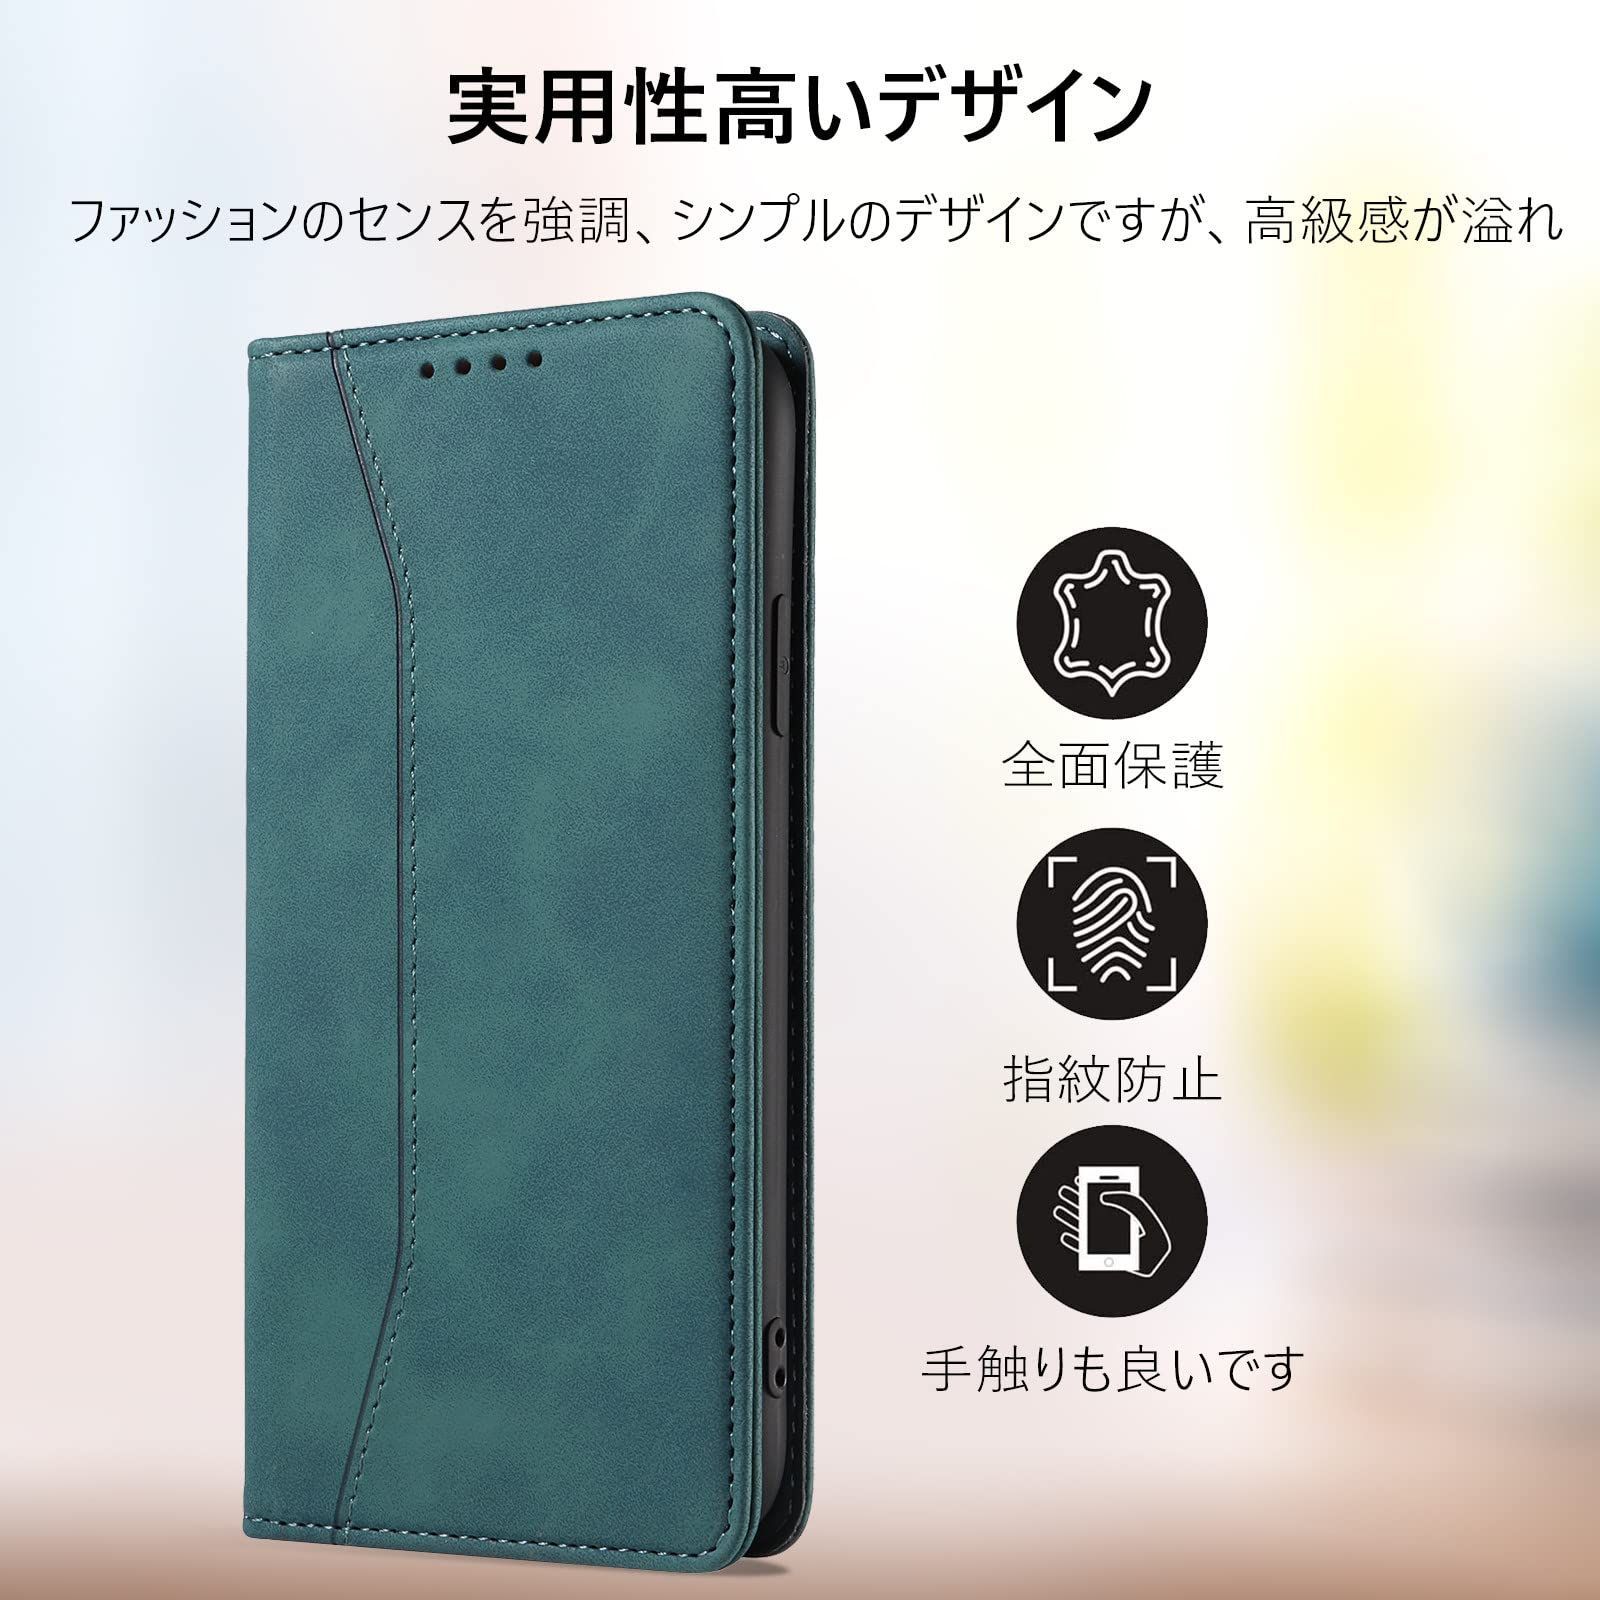 数量限定】【iPhone 7Plus/8Plus通用手帳ケース】iphone 8 plus ケース